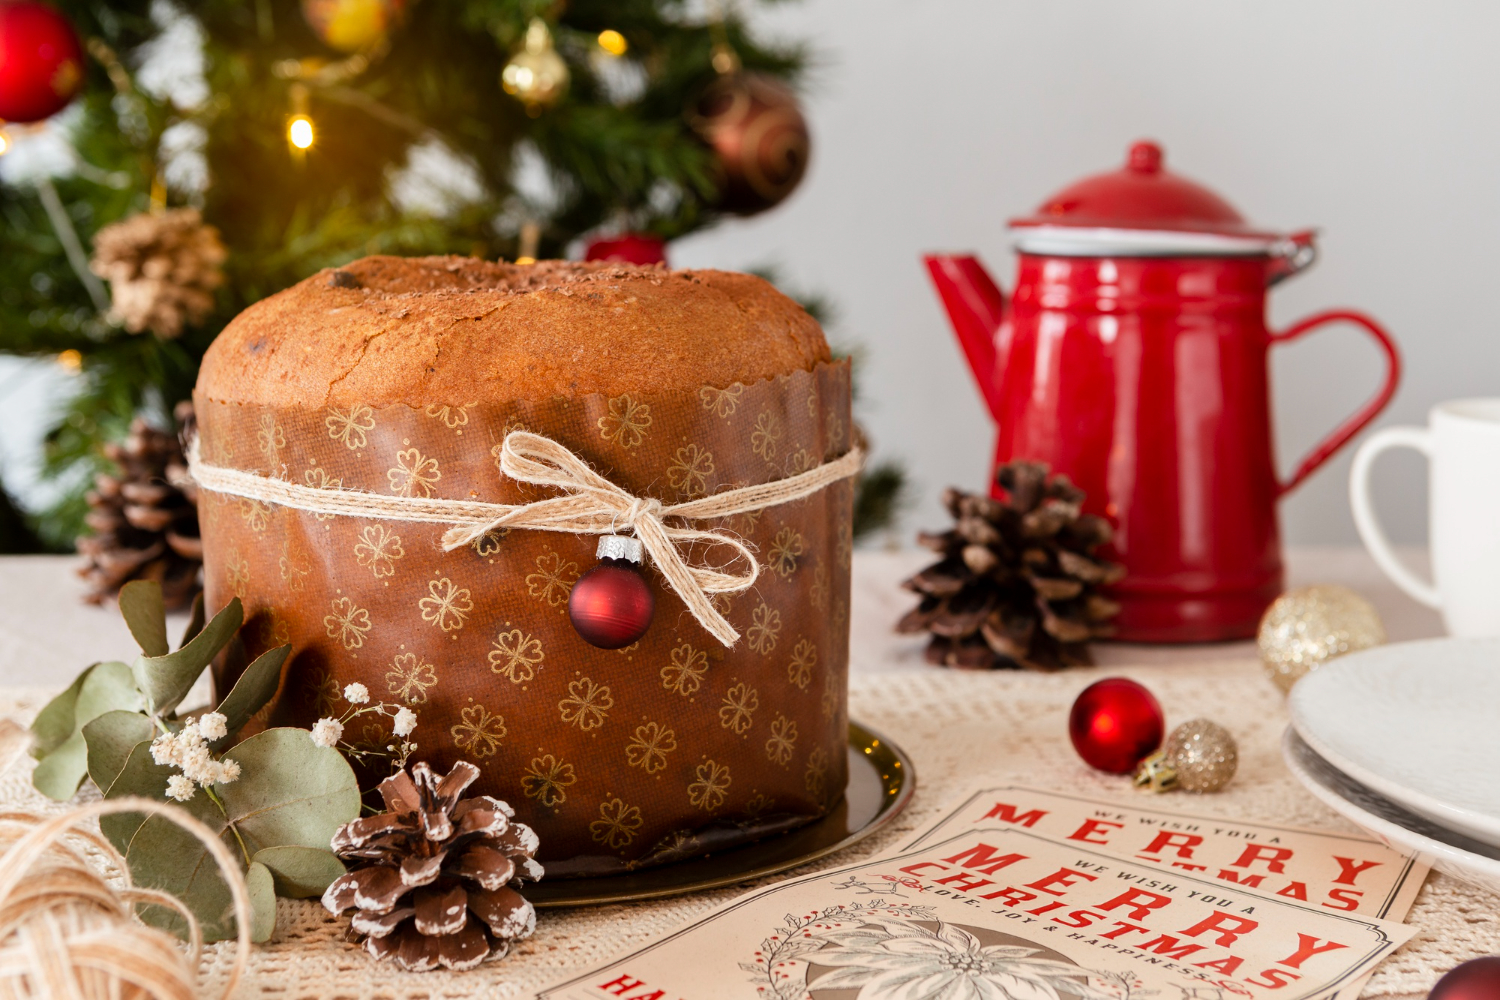 Πανετόνε: Λαχταριστή συνταγή για το αγαπημένο χριστουγεννιάτικο ιταλικό κέικ